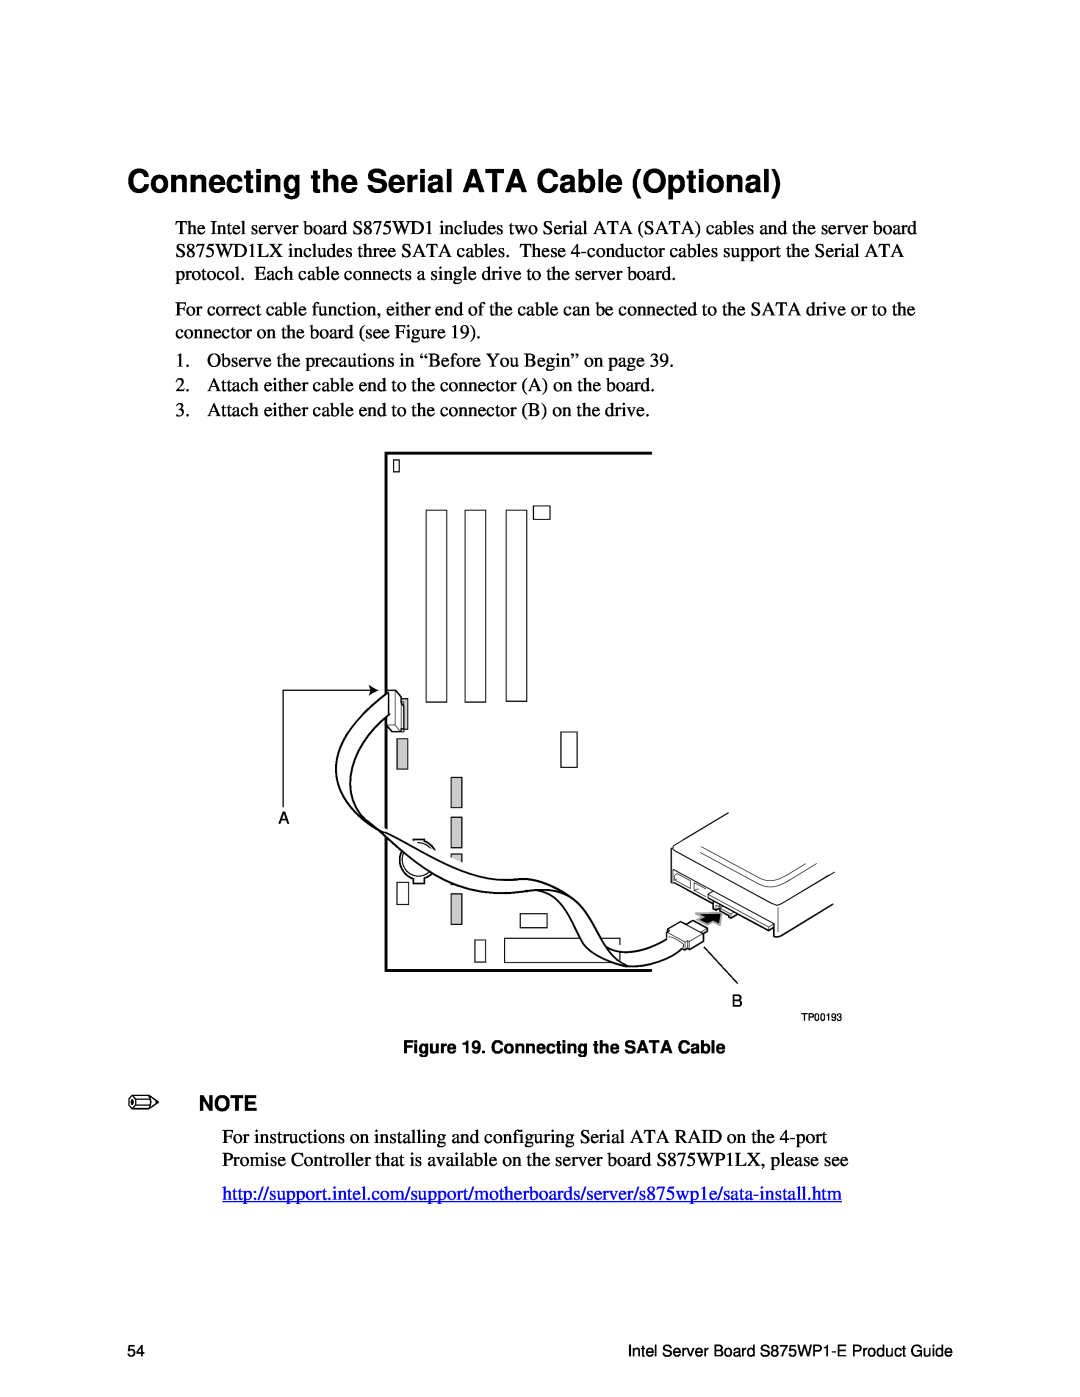 Intel S875WP1-E manual Connecting the Serial ATA Cable Optional, Connecting the SATA Cable 